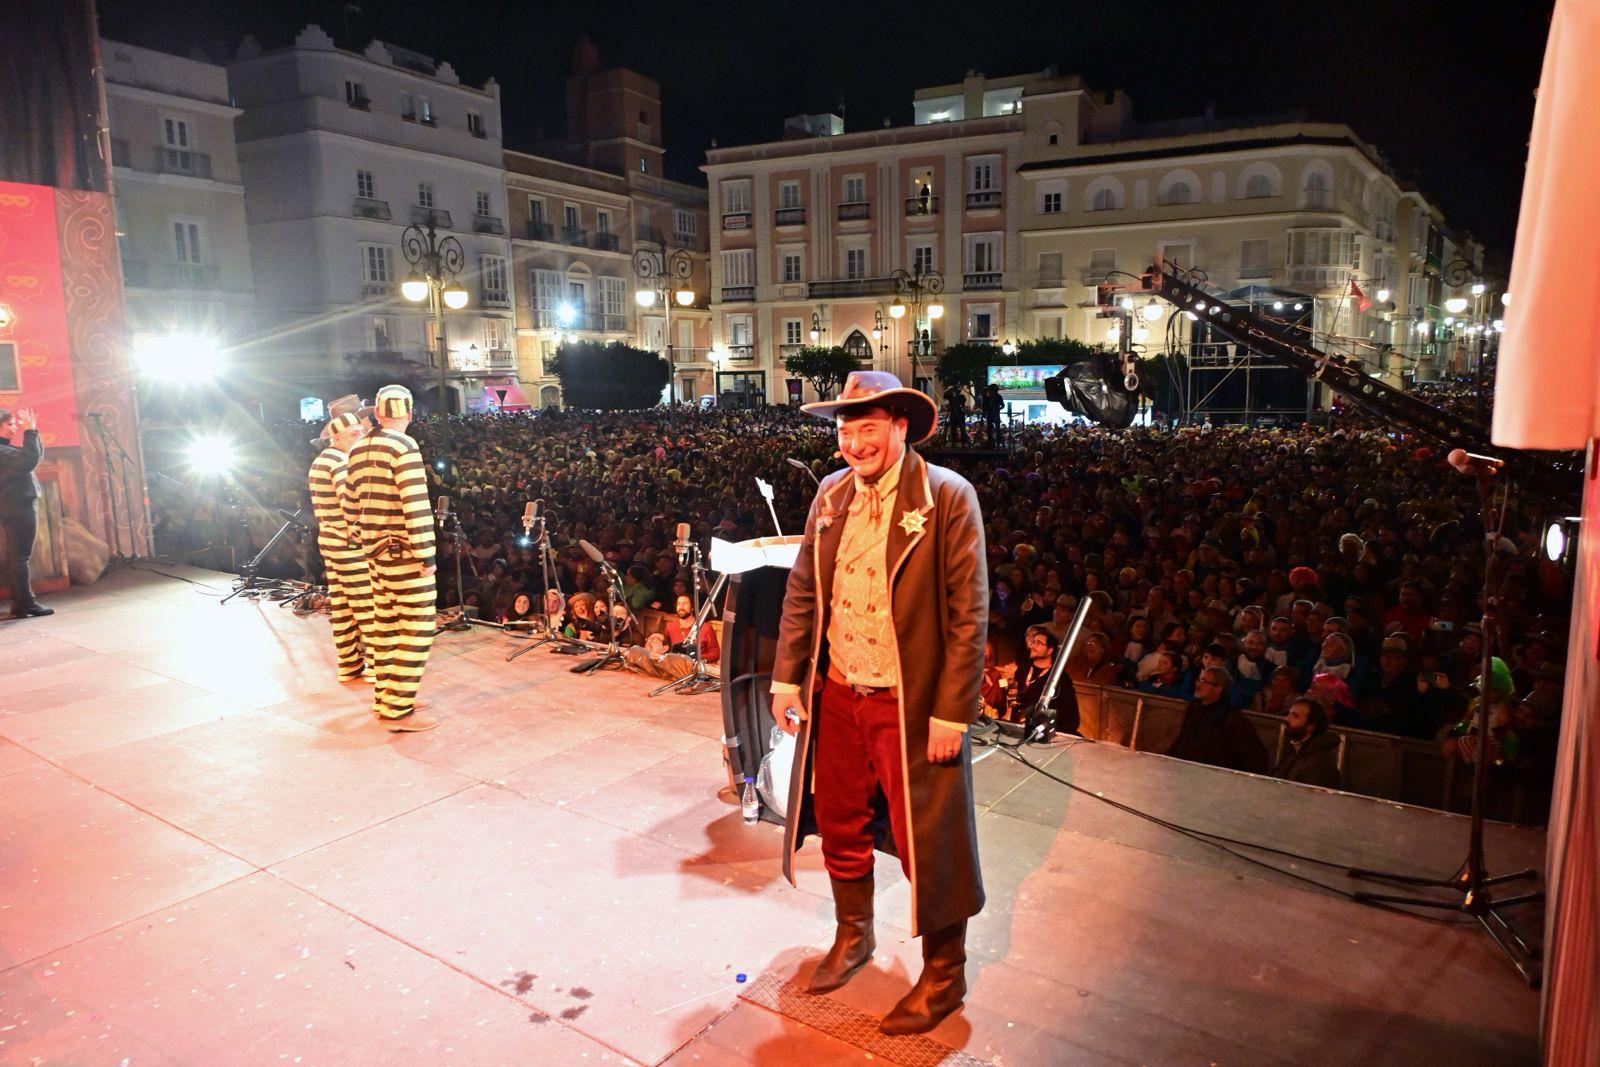 La cartera se perdió mientras que se celebraba el pregón de 'El Sheriff', uno de los platos fuertes del Carnaval de Cádiz.